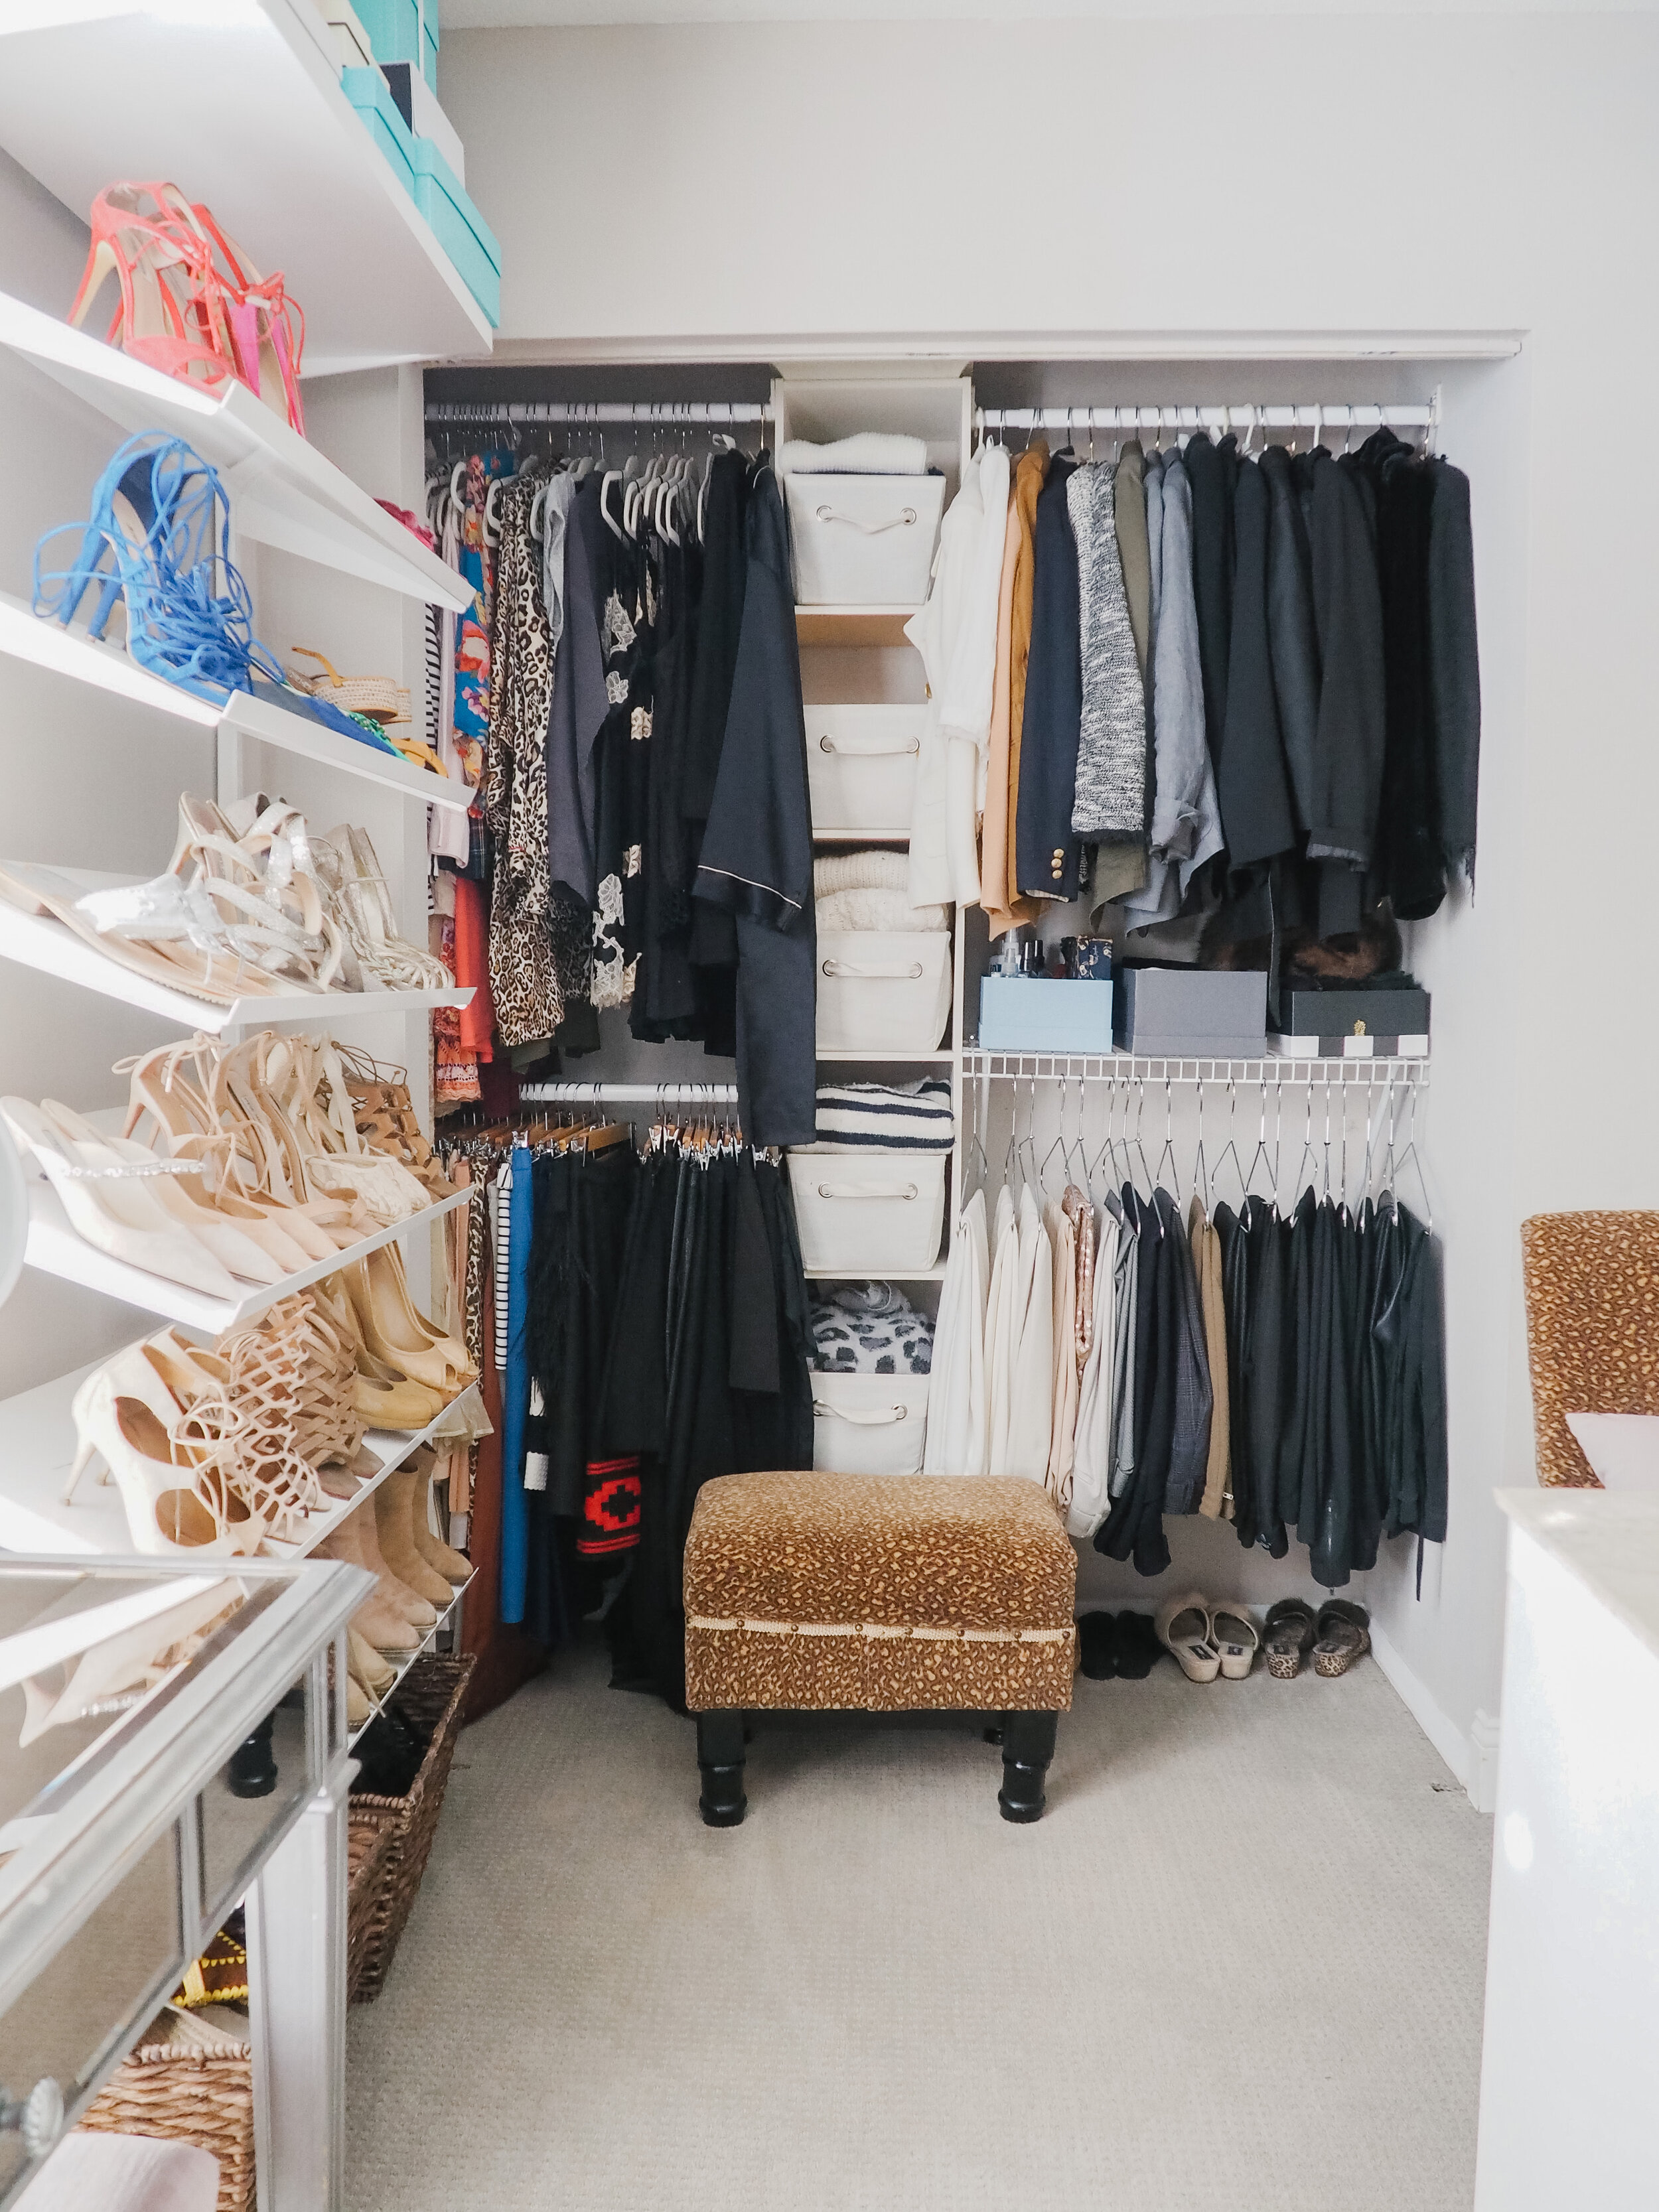 Shoe shelf and hanging pajamas, skirts, blazers and pants